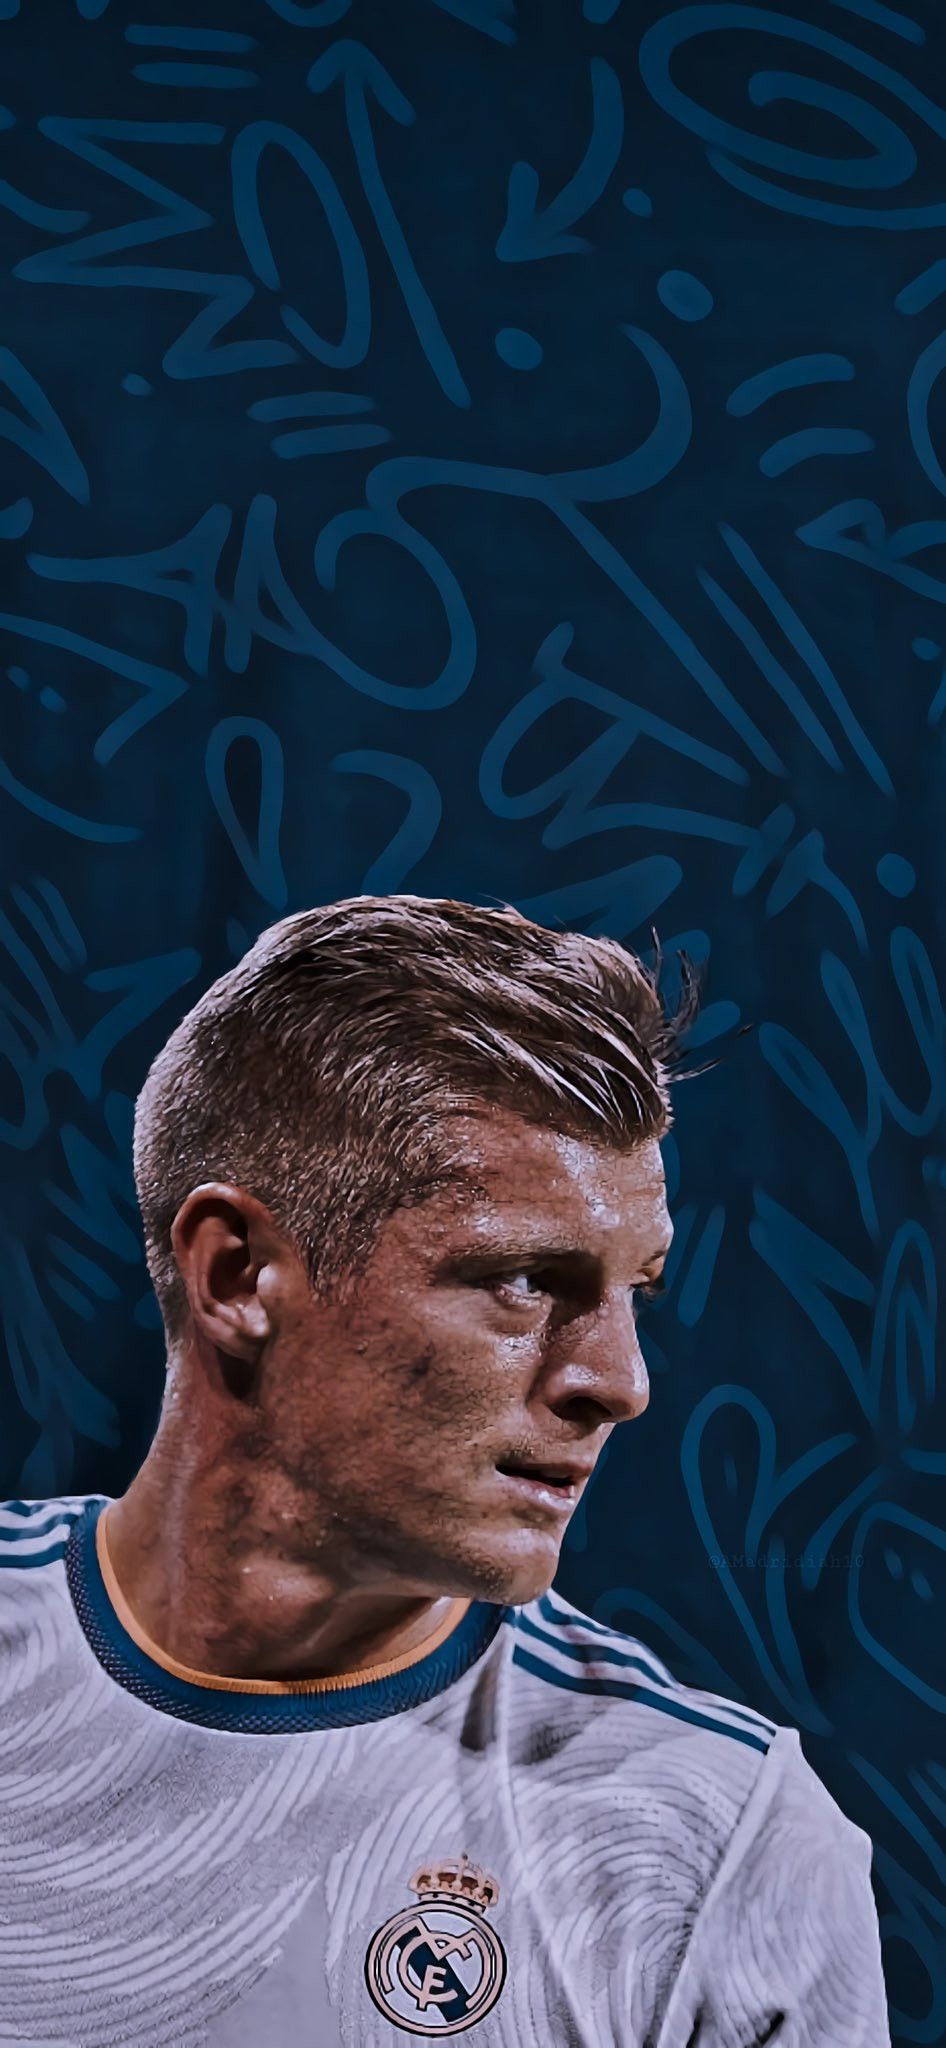 Toni Kroos wallpaper. Pemain sepak bola, Sepak bola